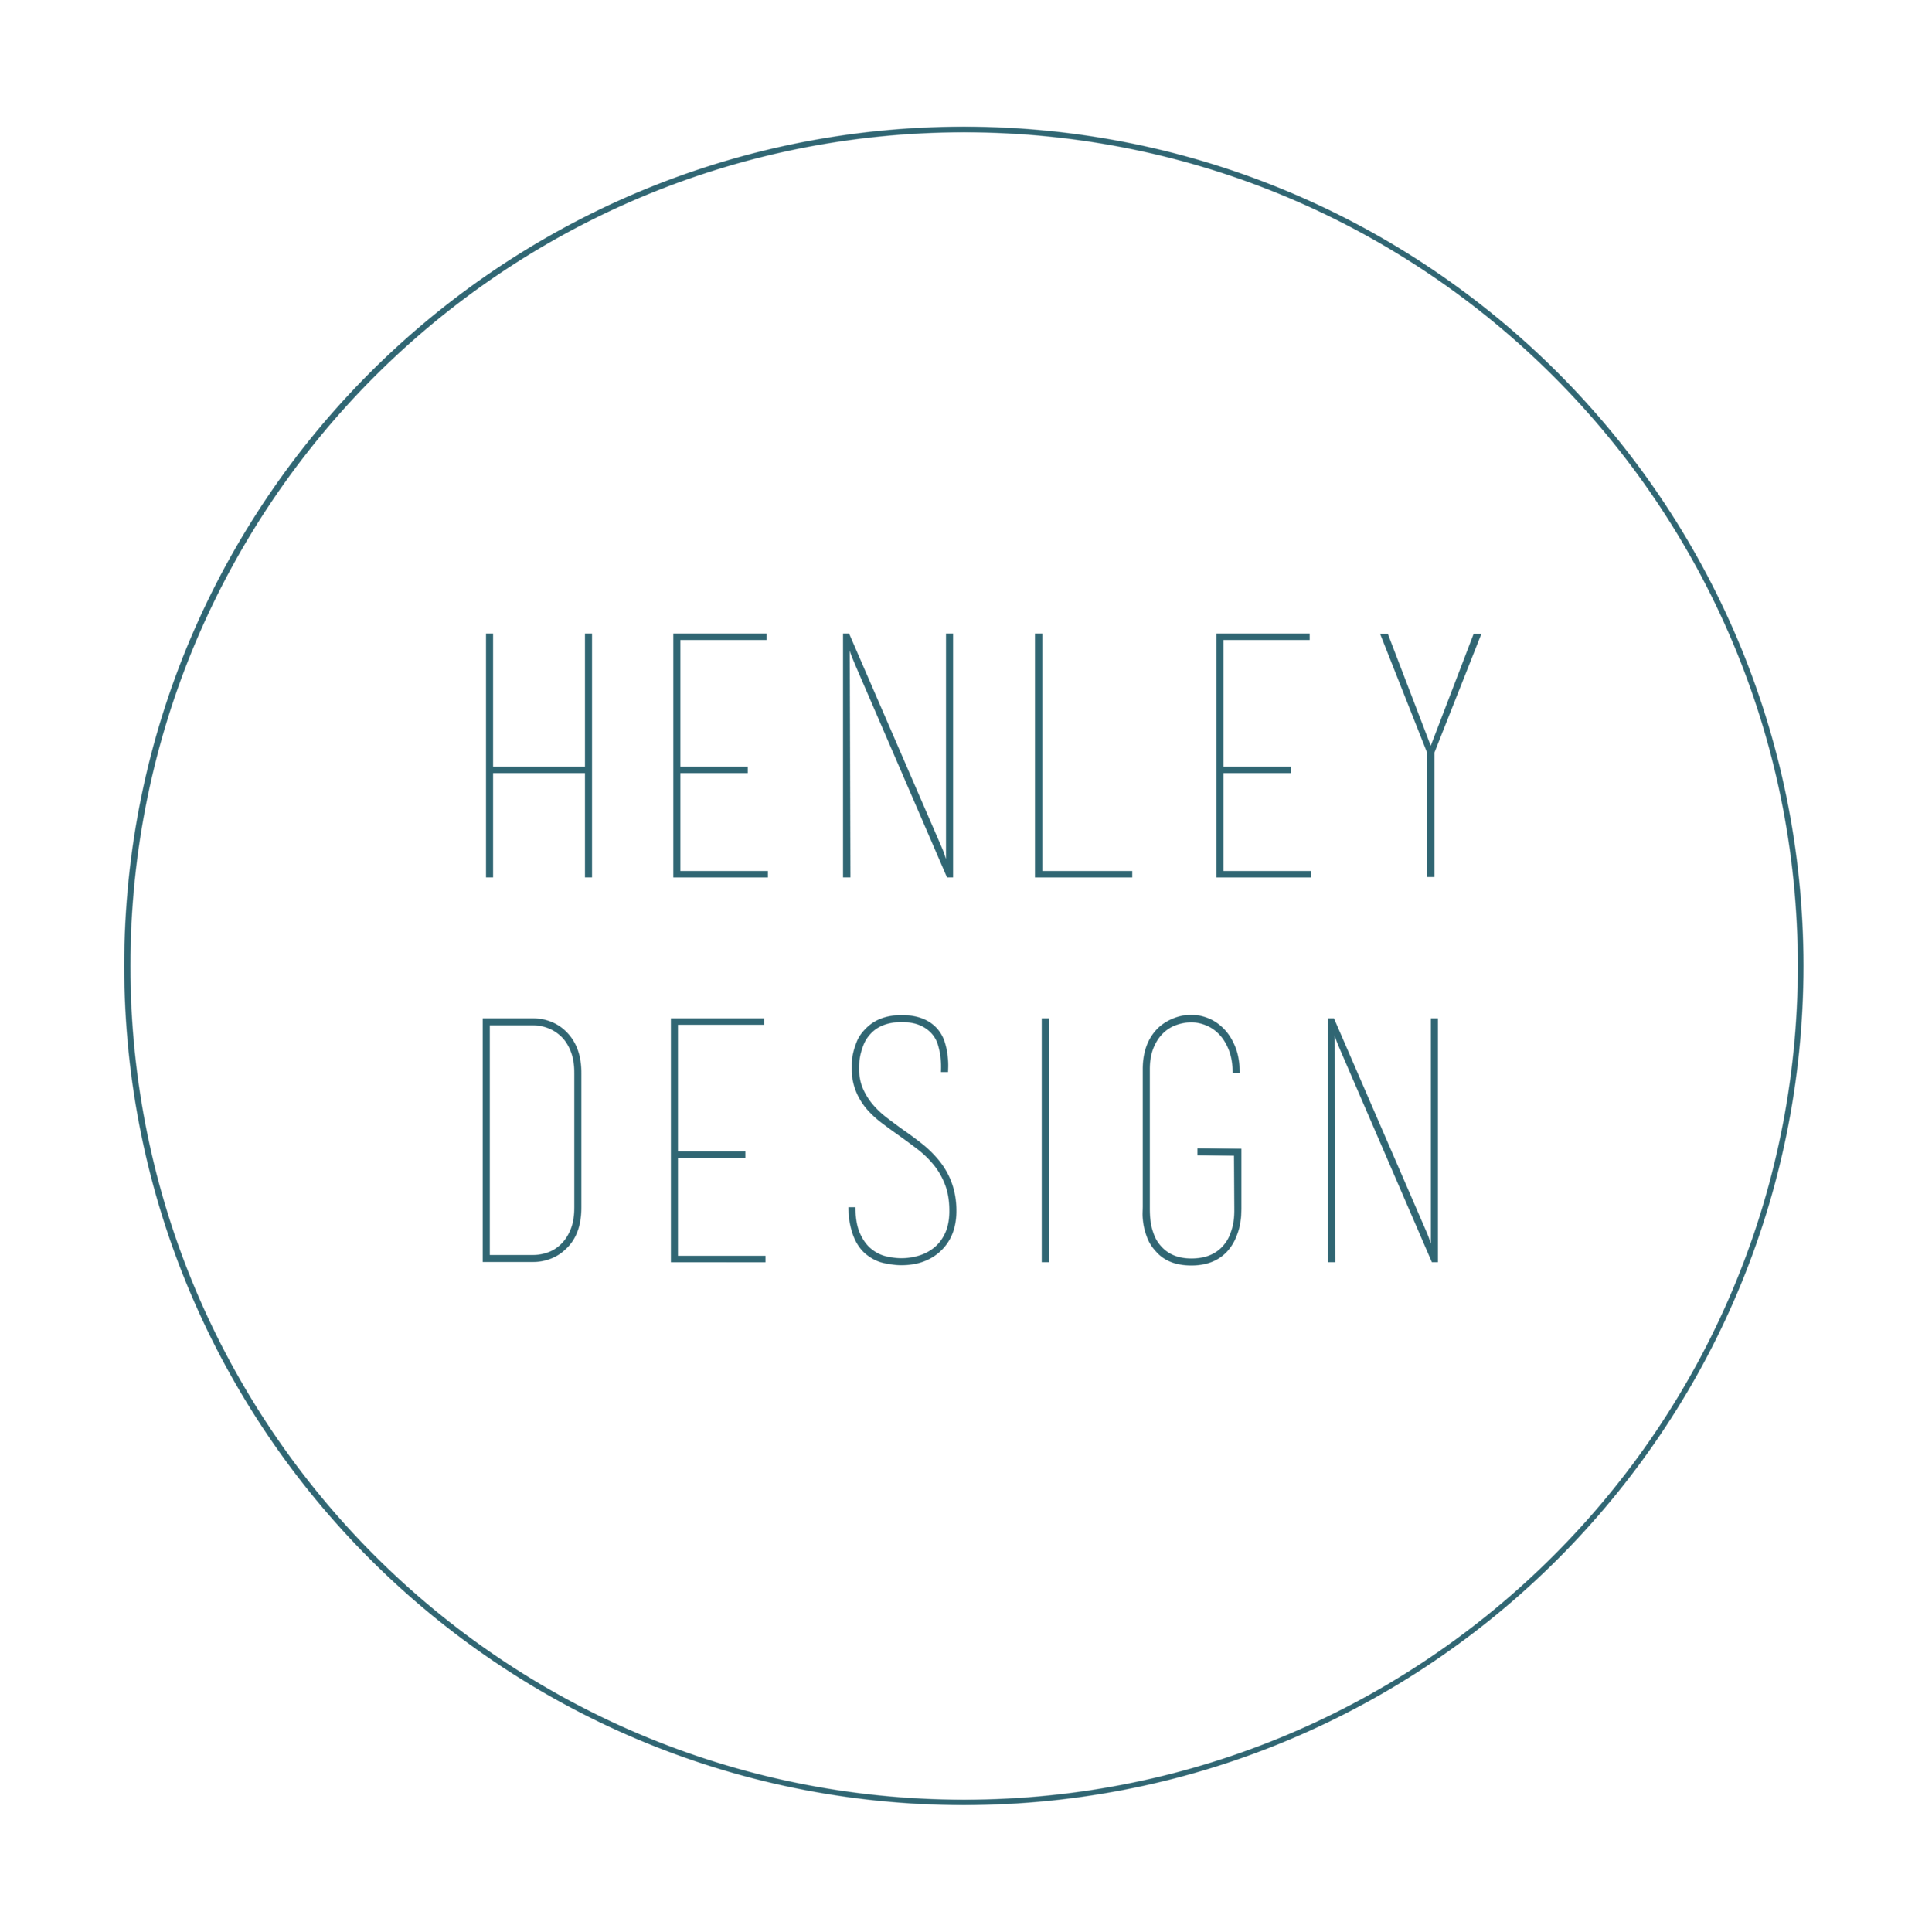 Henley Design - Interior Design Studio based in Boston, MA